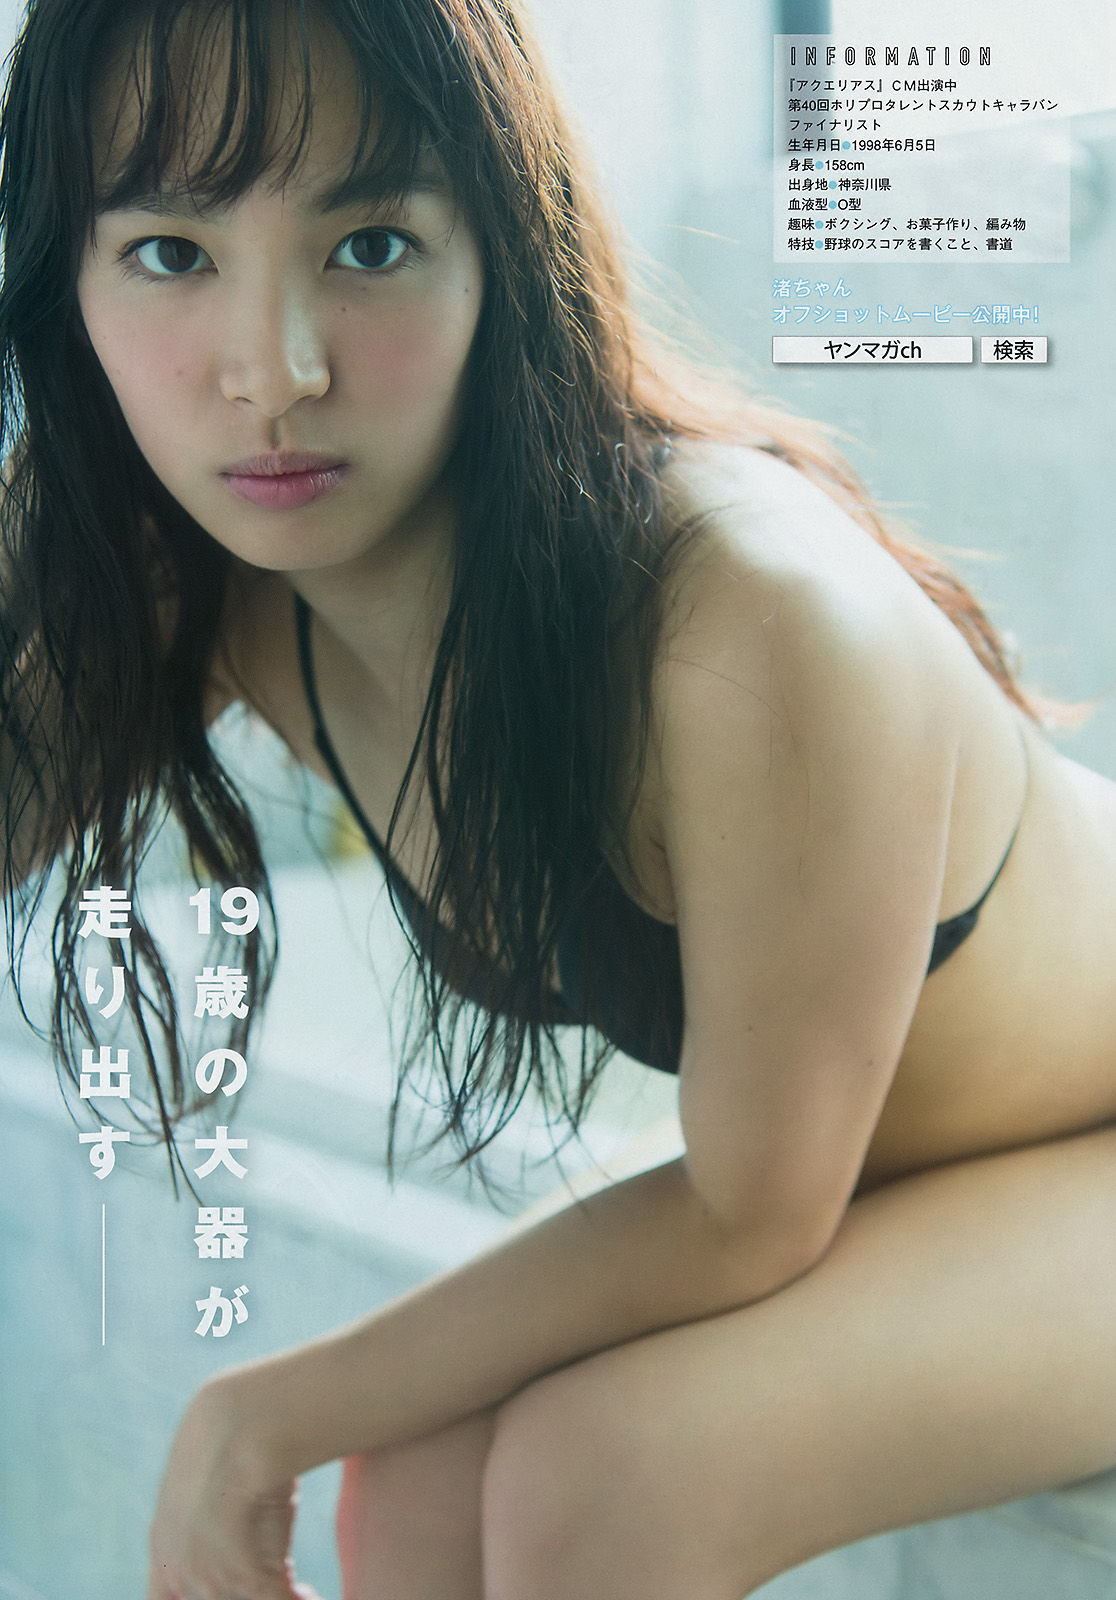 [Young Magazine] Nagisa Sekimizu Nashiko Momotsuki 2017 No.50 Photograph Page 11 No.b37736